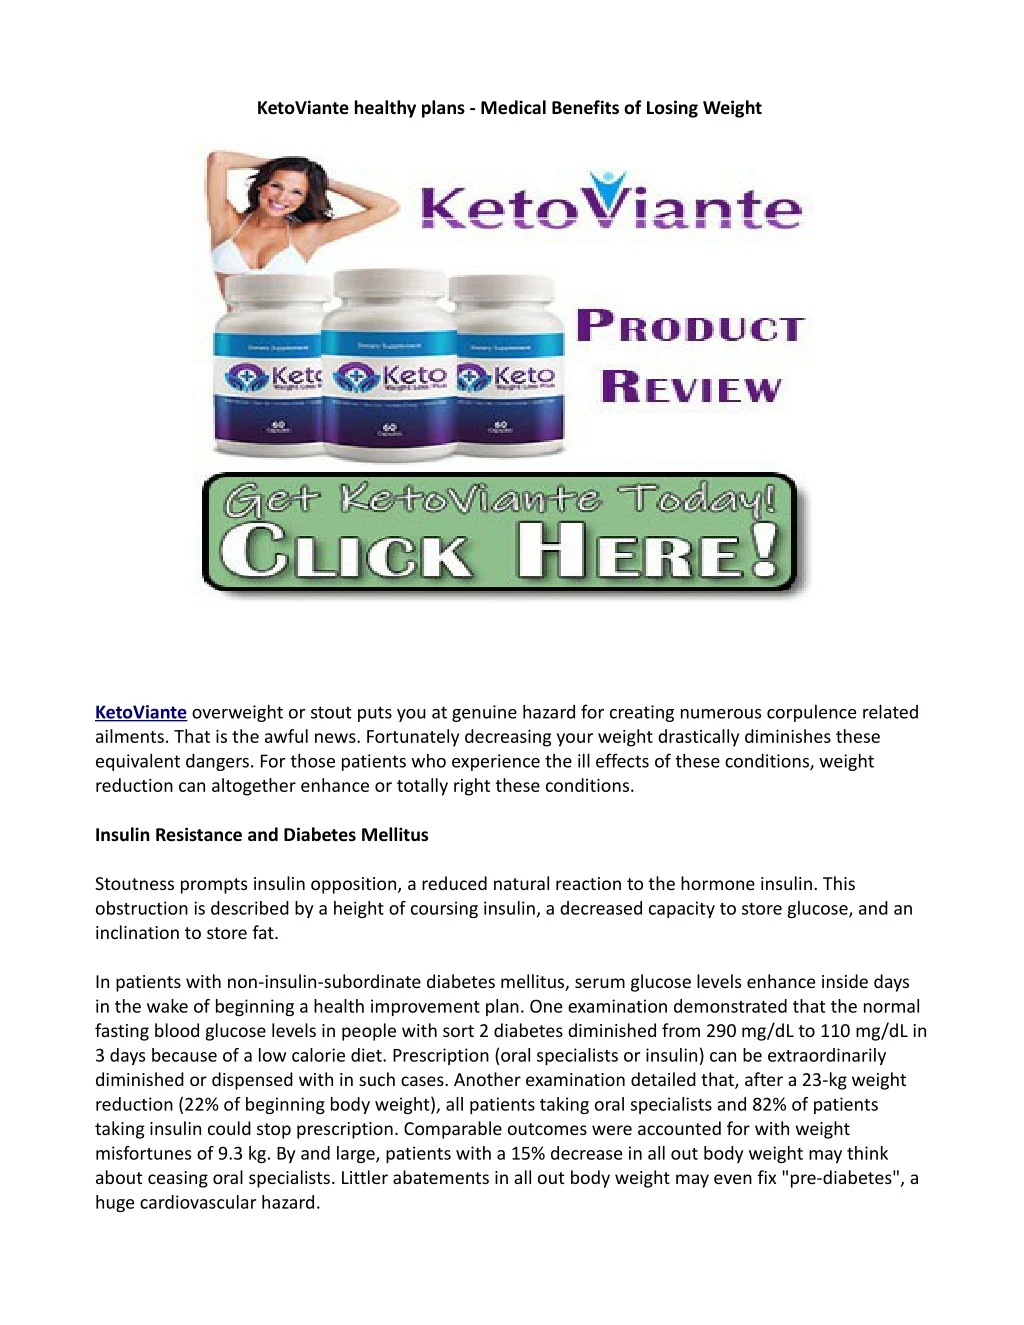 ketoviante healthy plans medical benefits